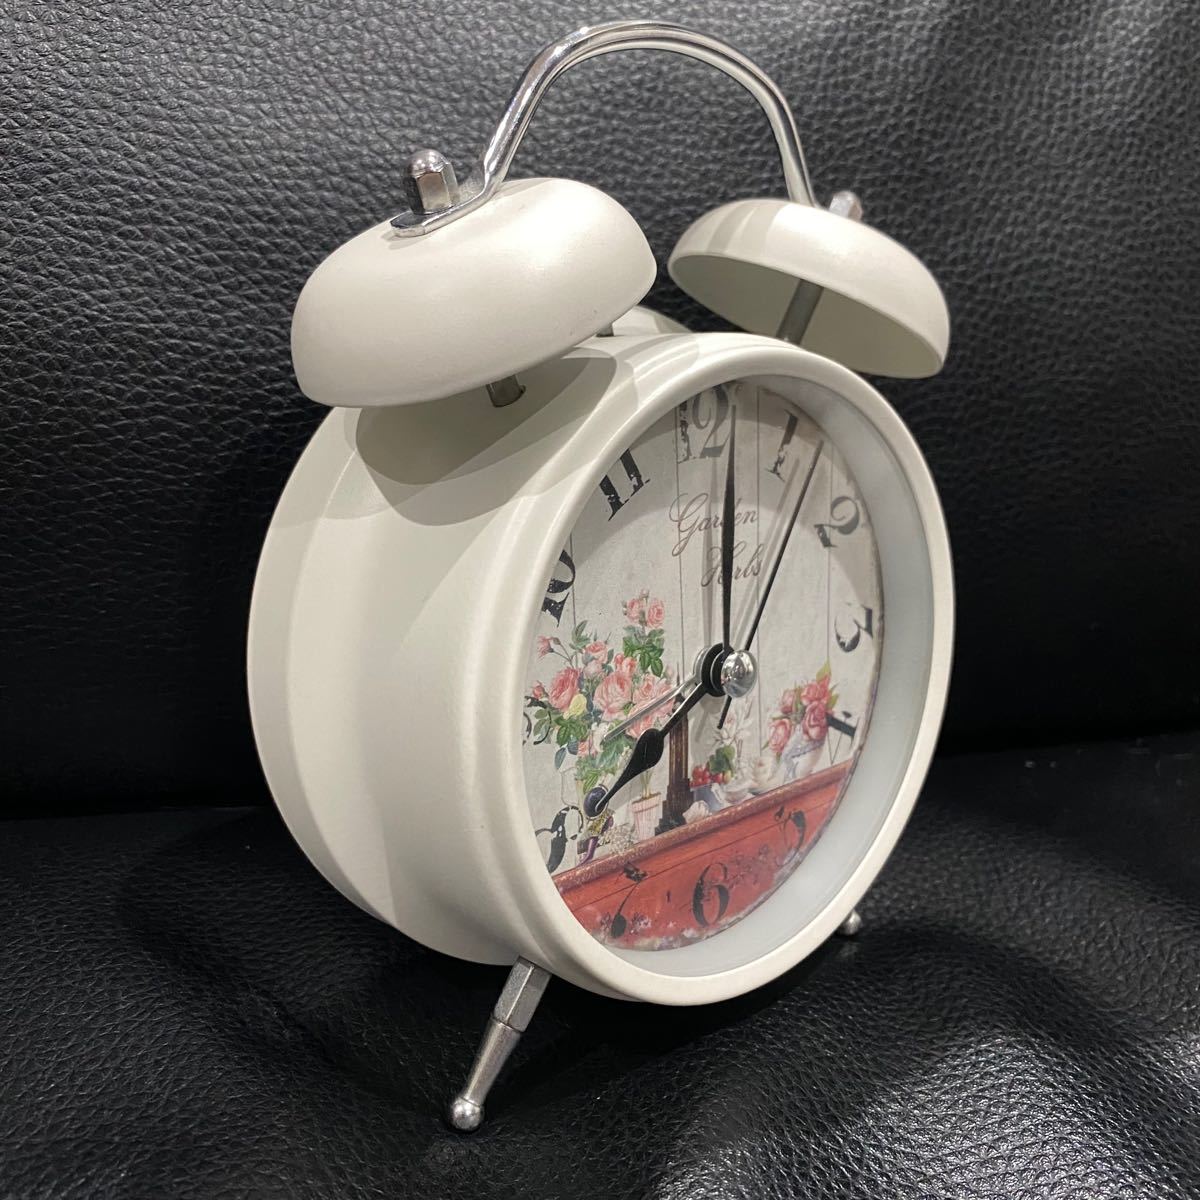 時計 目覚まし時計 花柄 ヴィンテージ レトロデザイン 卓上 置時計 ホワイト 白 訳あり